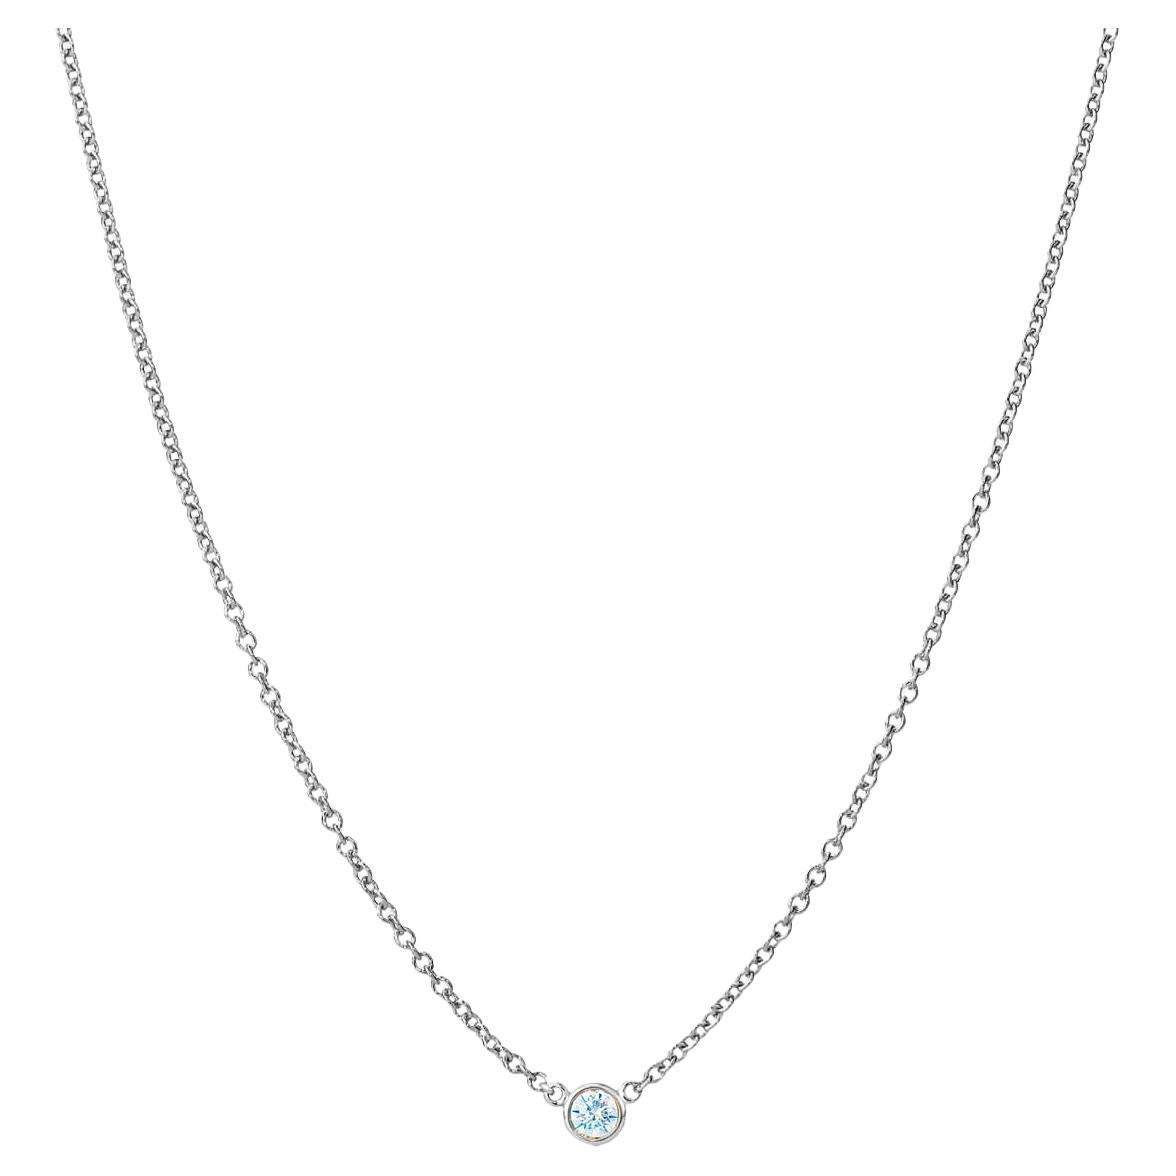 Suzy Levian Collier solitaire en or 14 carats avec diamants blancs ronds de 0,15 carat